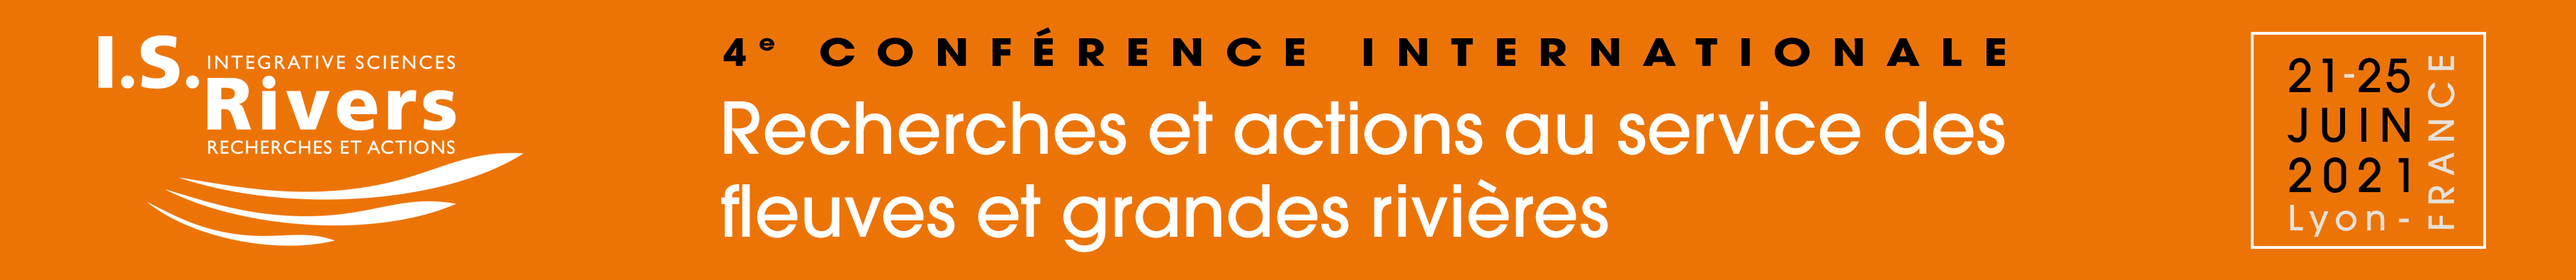 I.S.Rivers - Recherches et actions au service des fleuves et grandes rivires